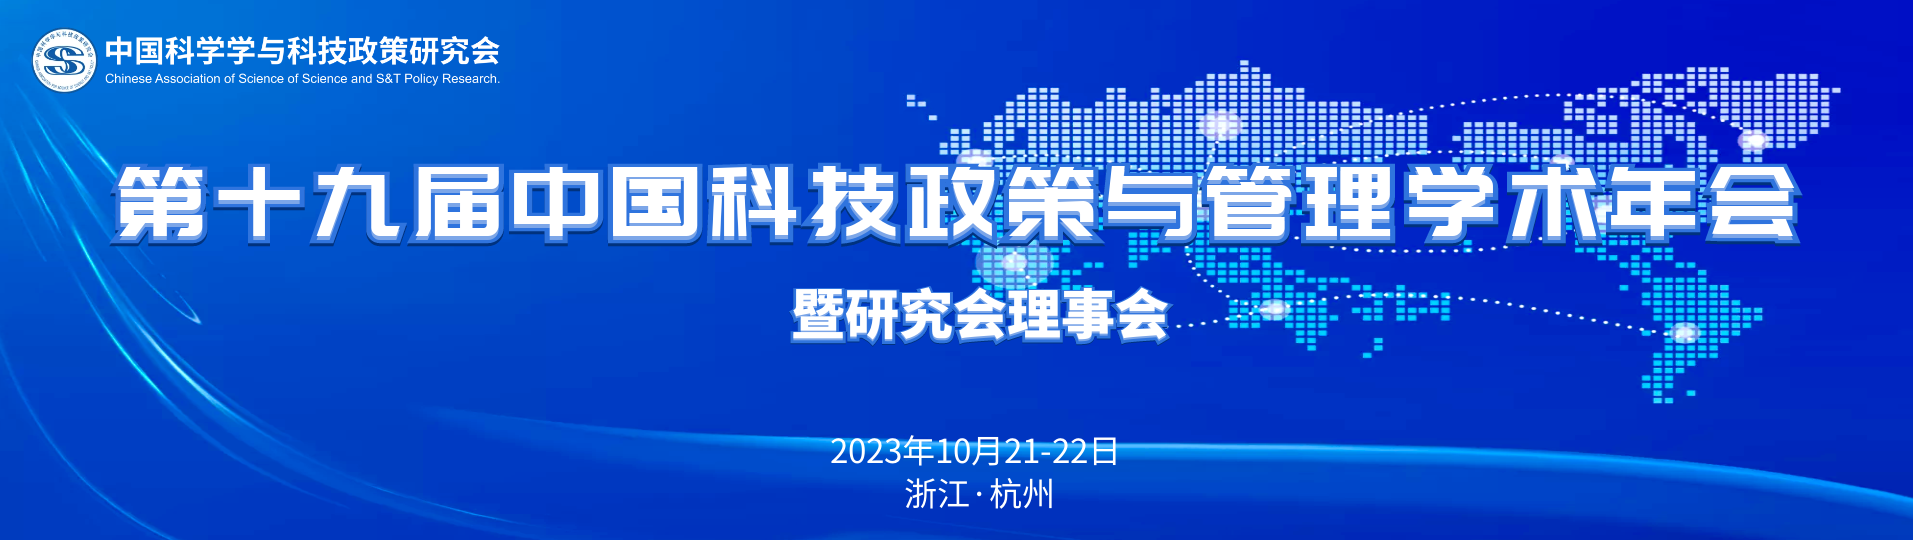 第十九届中国科技政策与管理学术年会暨研究会理事会